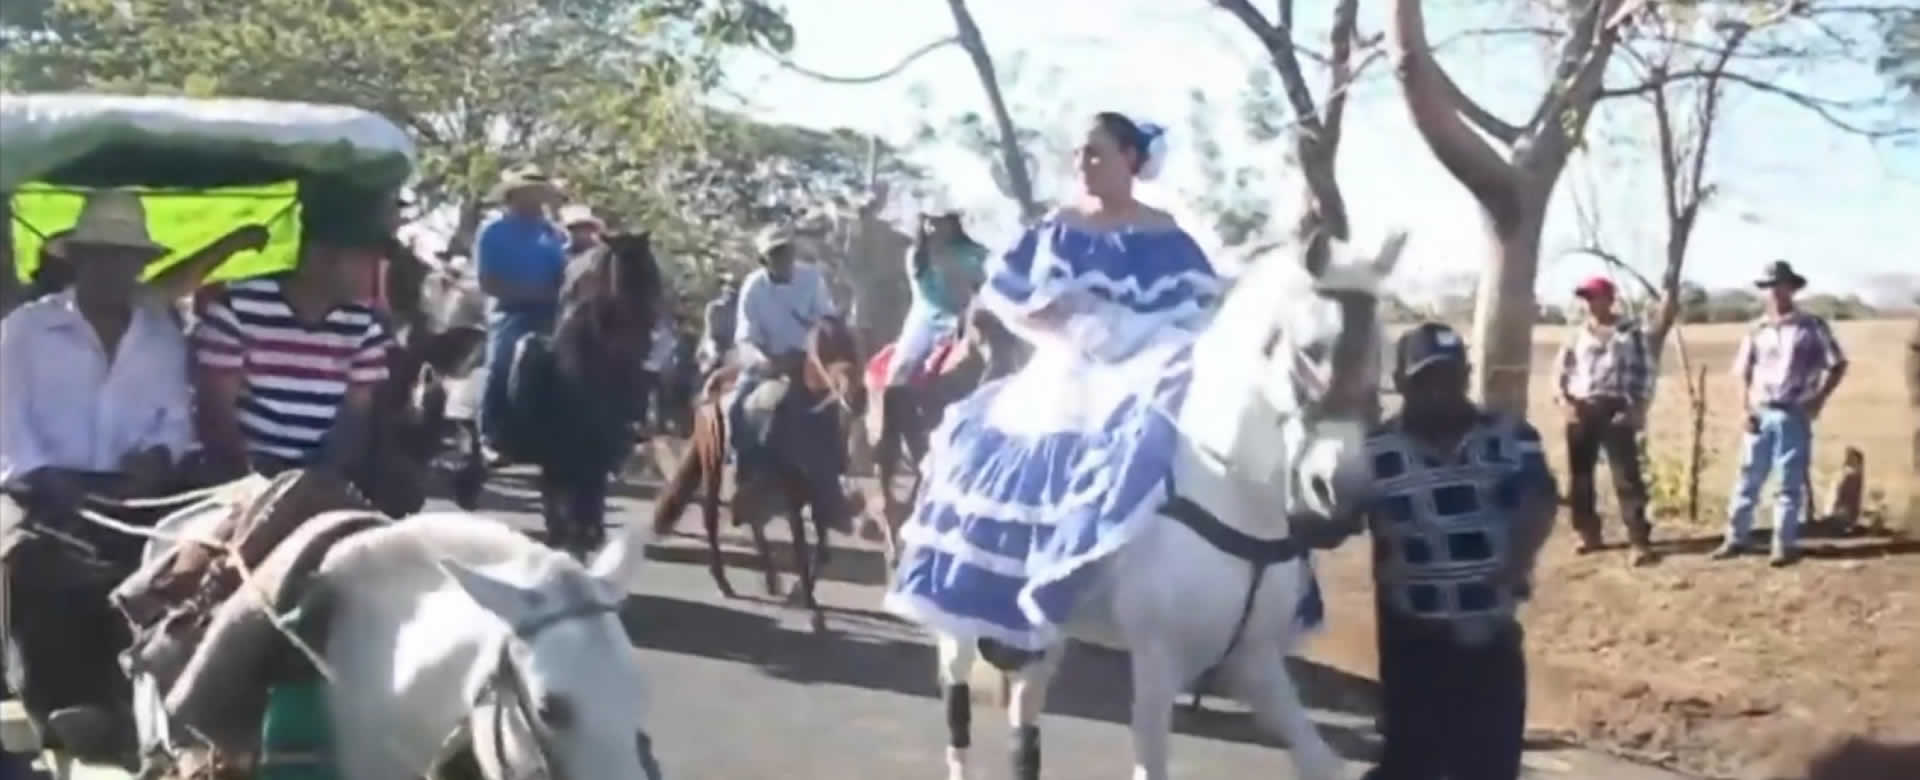 Carazo realiza desfile hípico en honor a su santa patrona